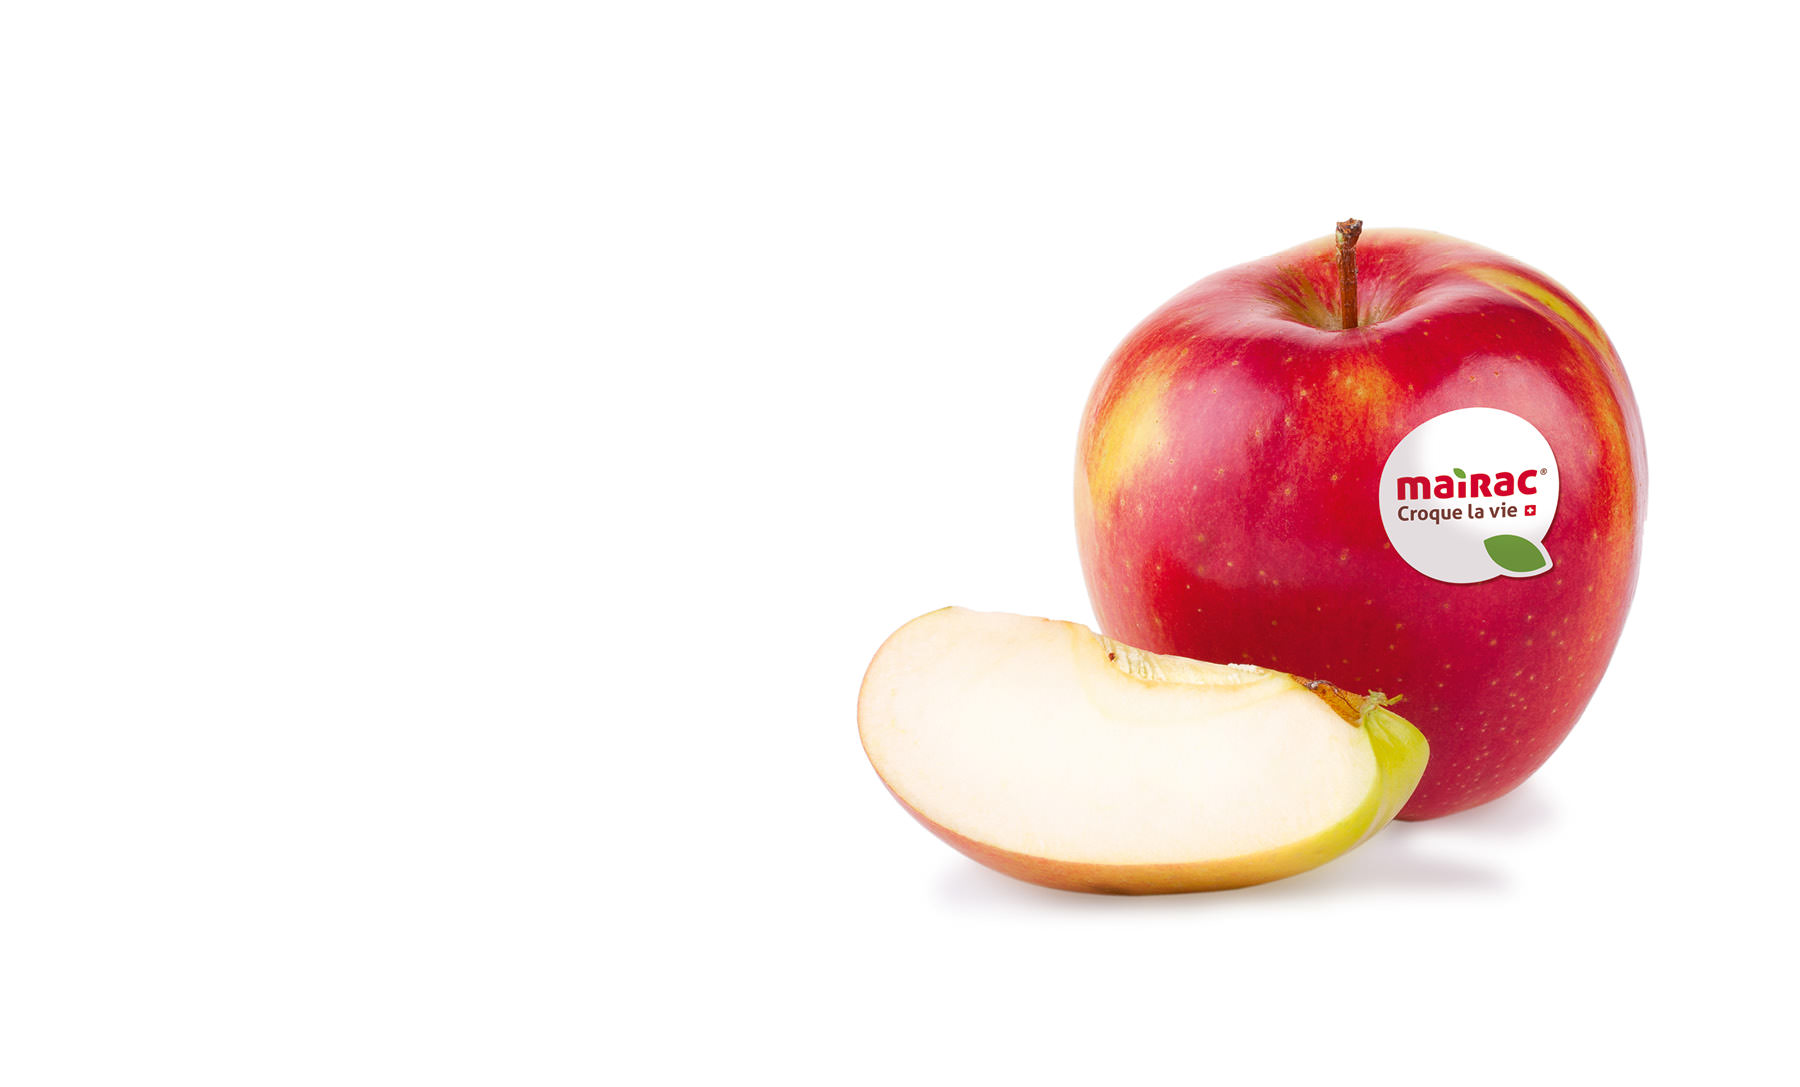 Mairac Croque la vie logo pomme